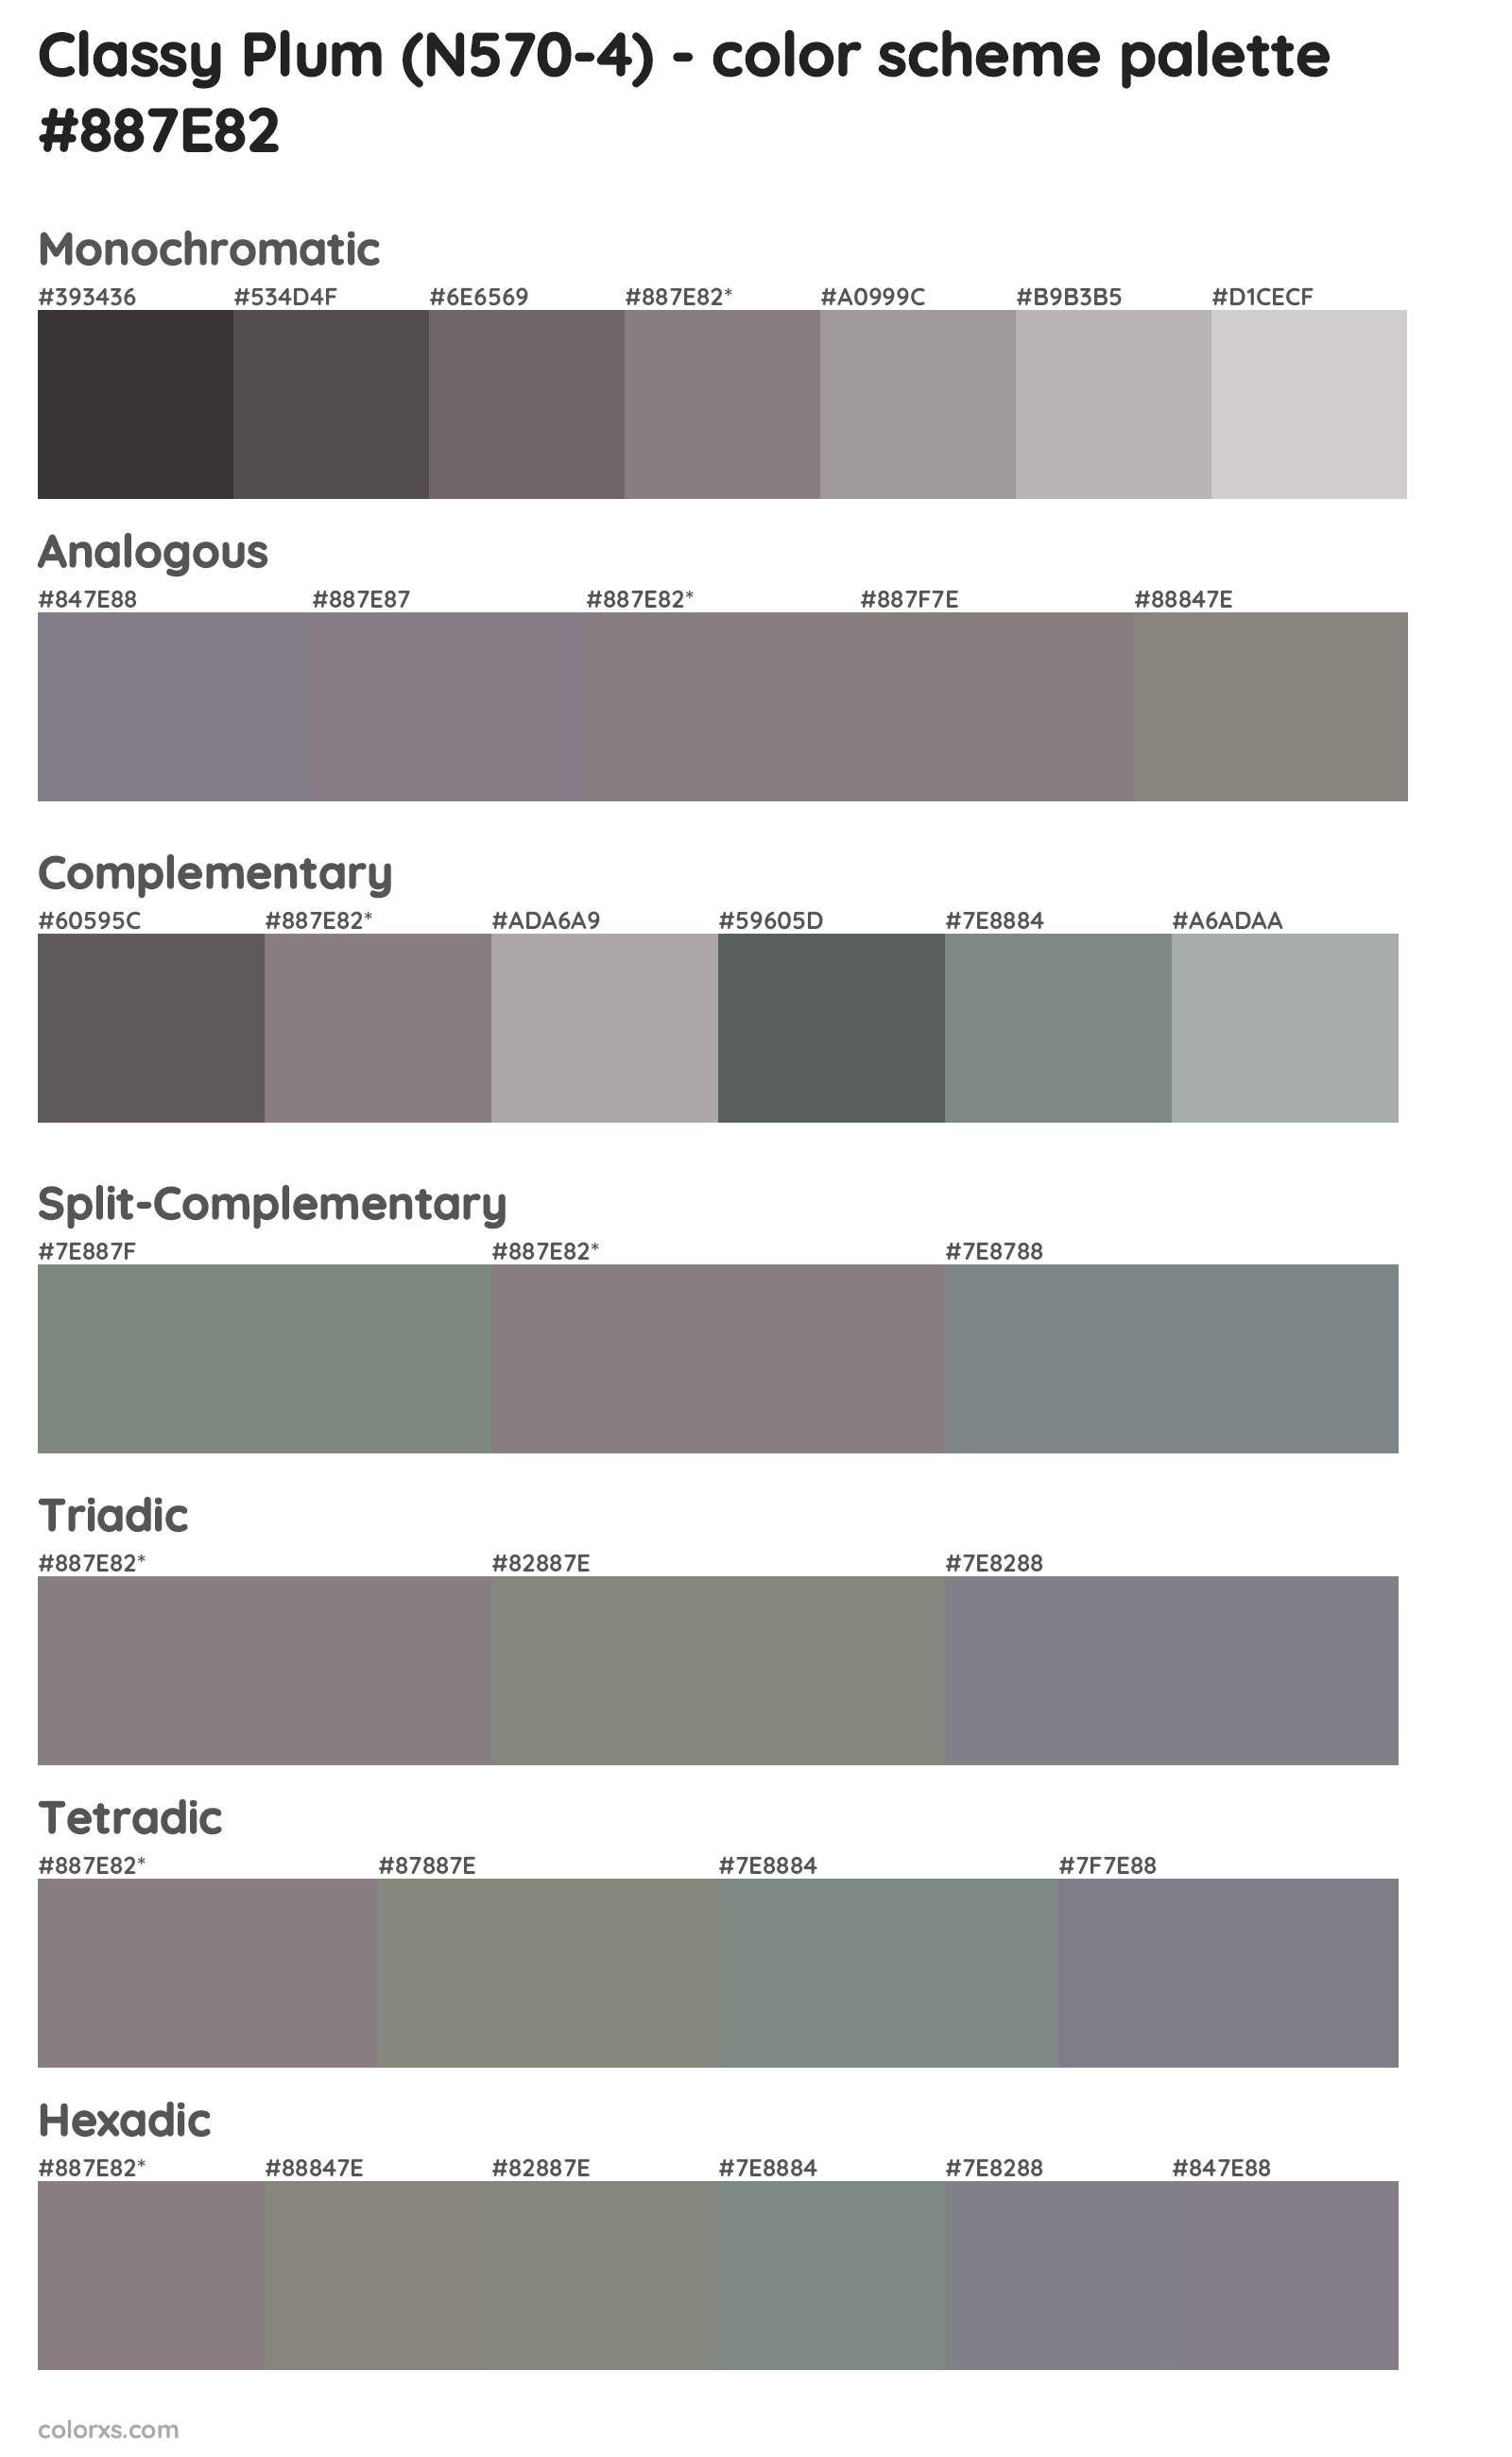 Classy Plum (N570-4) Color Scheme Palettes